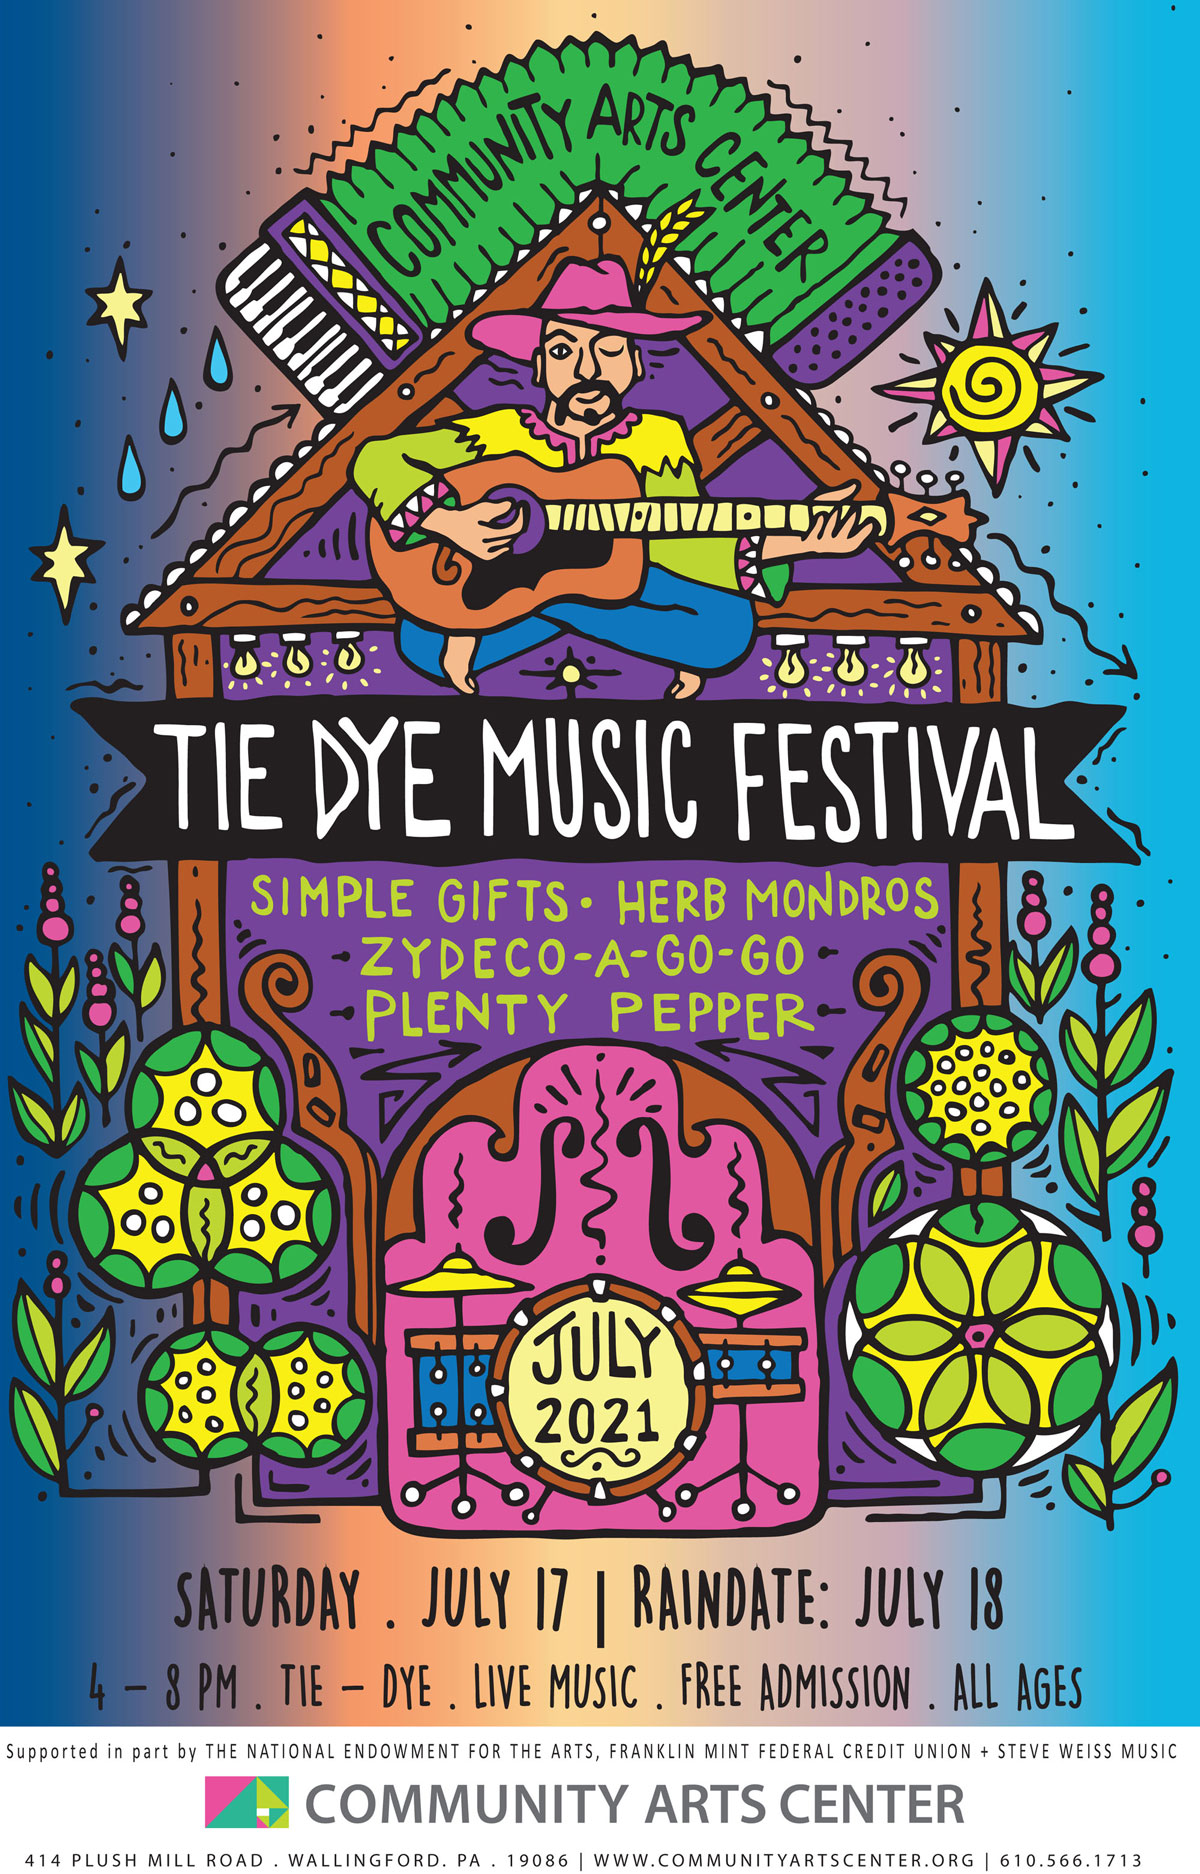 Community Arts Center’s 9th Annual Tie Dye Music Festival Delaware